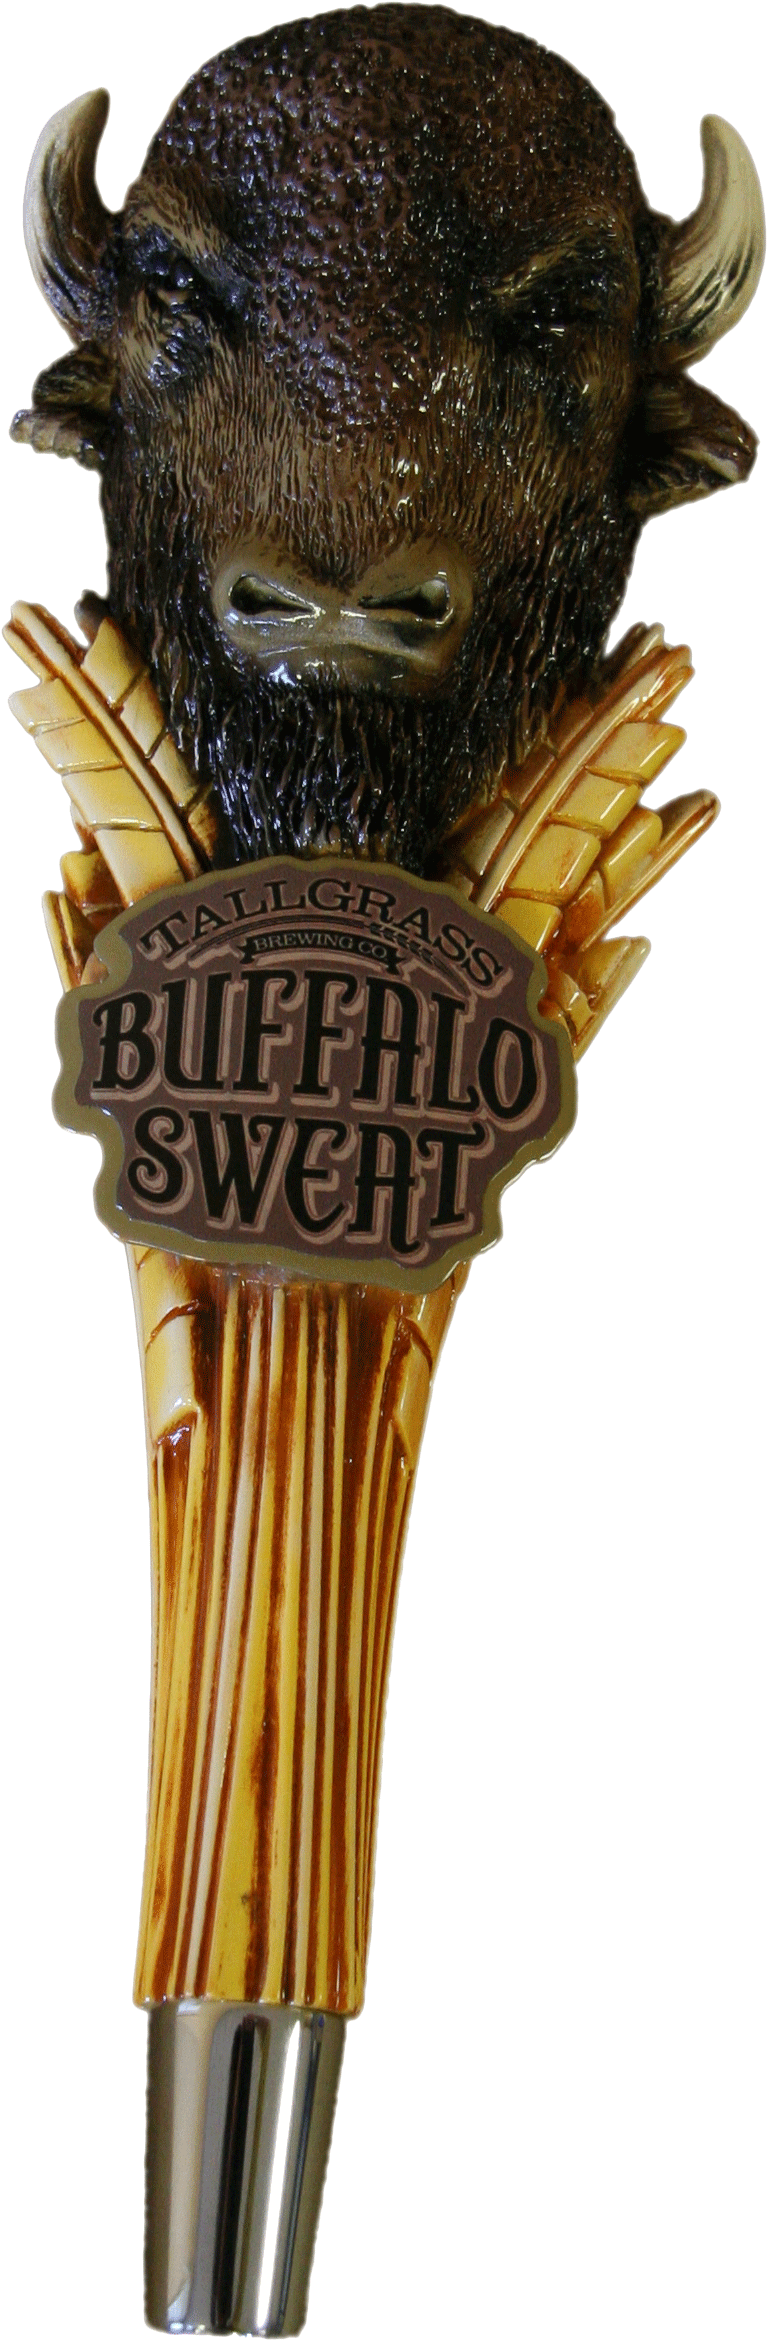 Buffalo Sweat By Tallgrass - Bronze Sculpture (2336x3504), Png Download